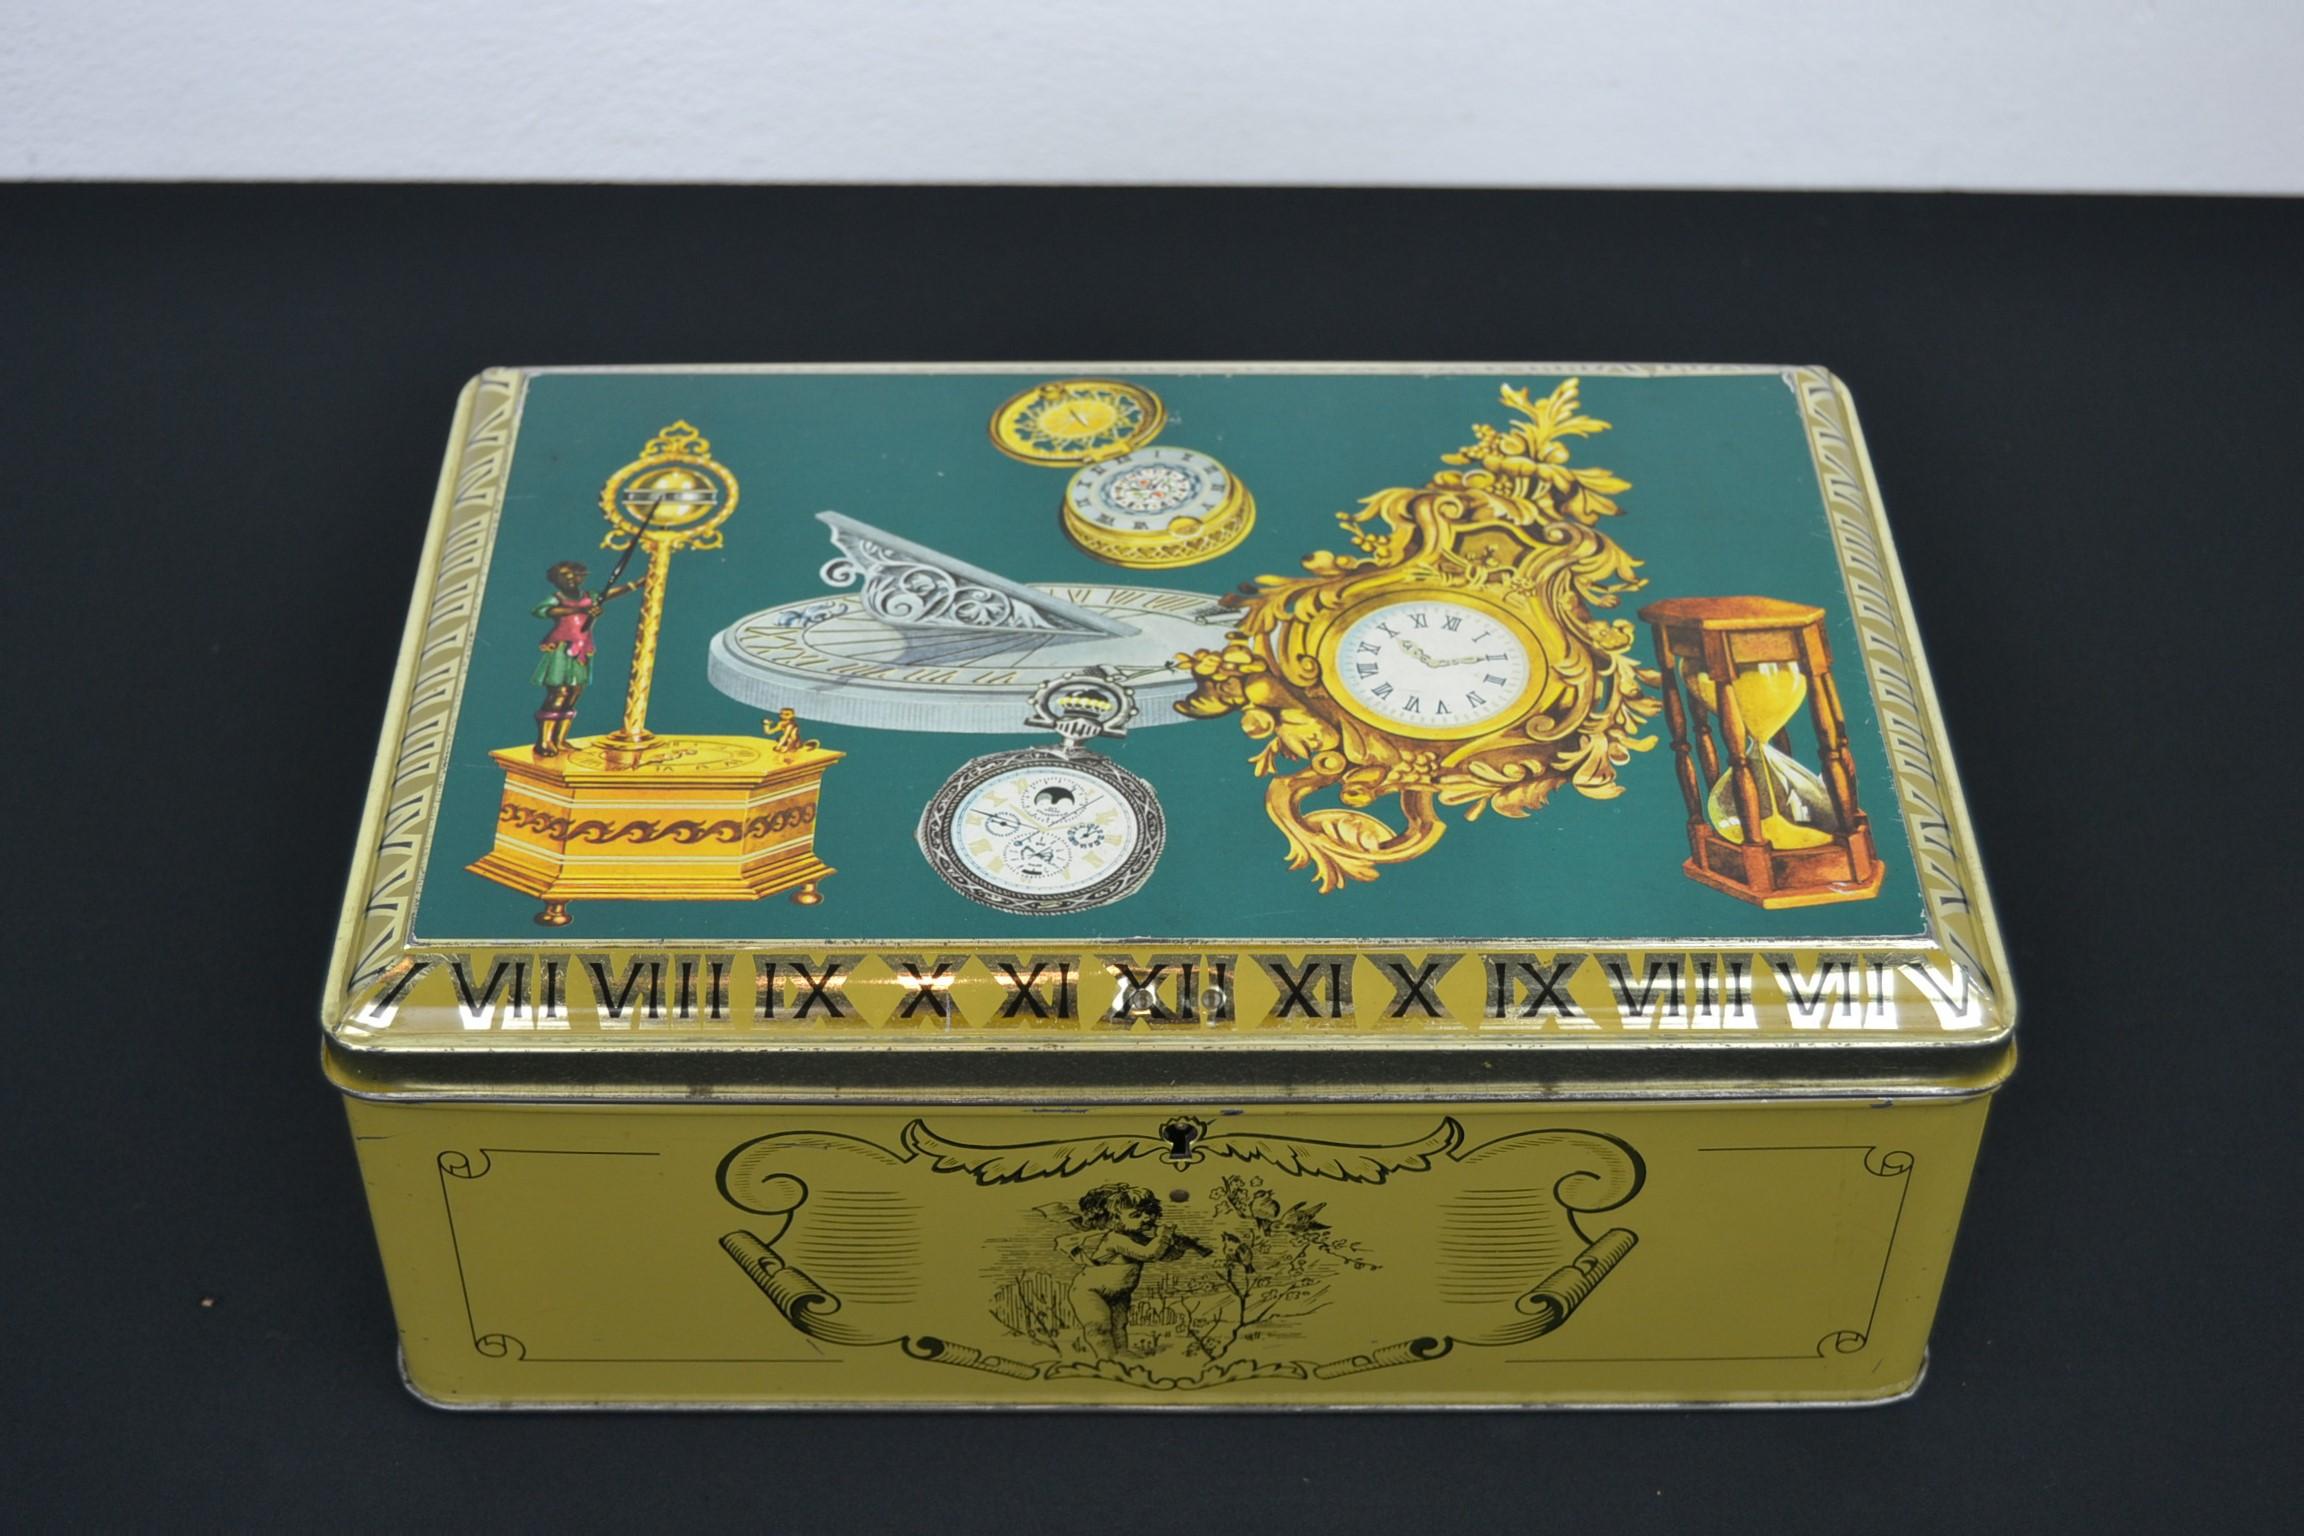 Alte Konfektdose mit Motiv: Antike Uhren, antike Uhren, antike Zeitmesser
Diese Blechdose aus den 1950er Jahren ist eine tolle Deko- oder Aufbewahrungsbox mit schönem Design auf dem Deckel mit antiken Zeitmessern wie Pendeluhr, antike Taschenuhr,